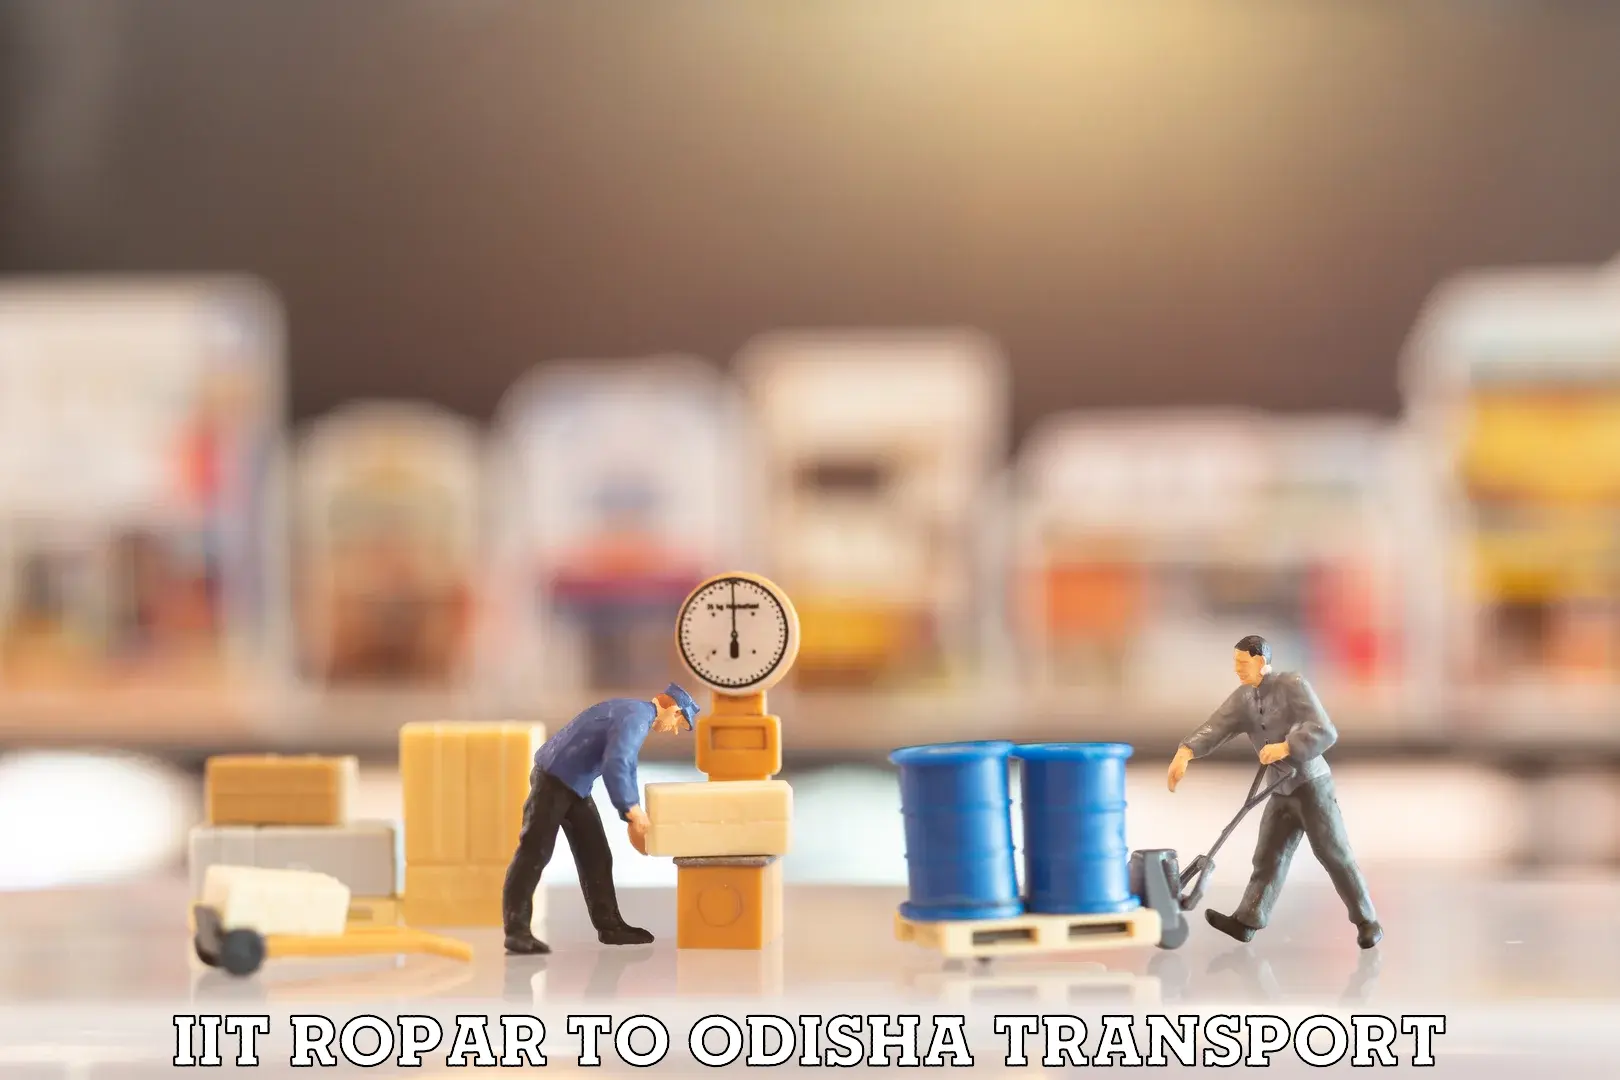 All India transport service IIT Ropar to Bhanjanagar